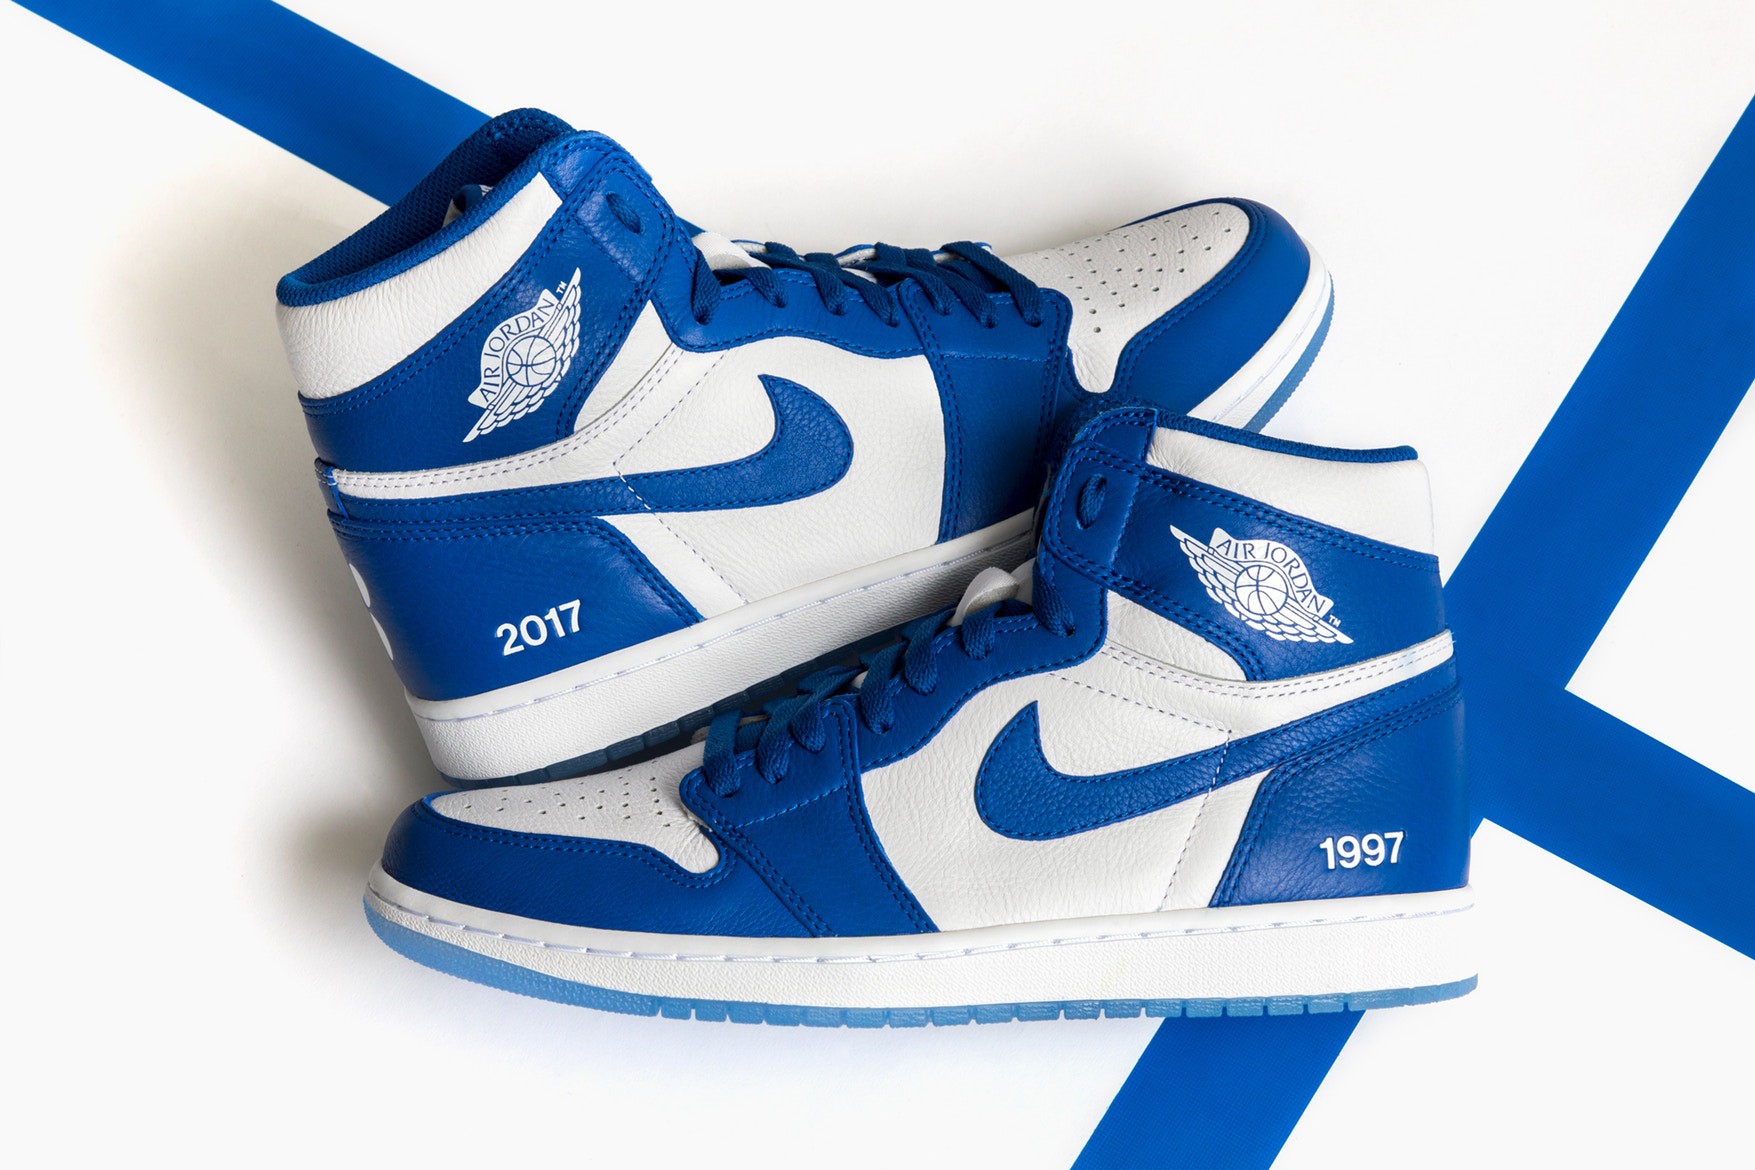 Mảng giày bóng rổ retro của Jordan vẫn giữ được vị thế trong lòng người hâm mộ.